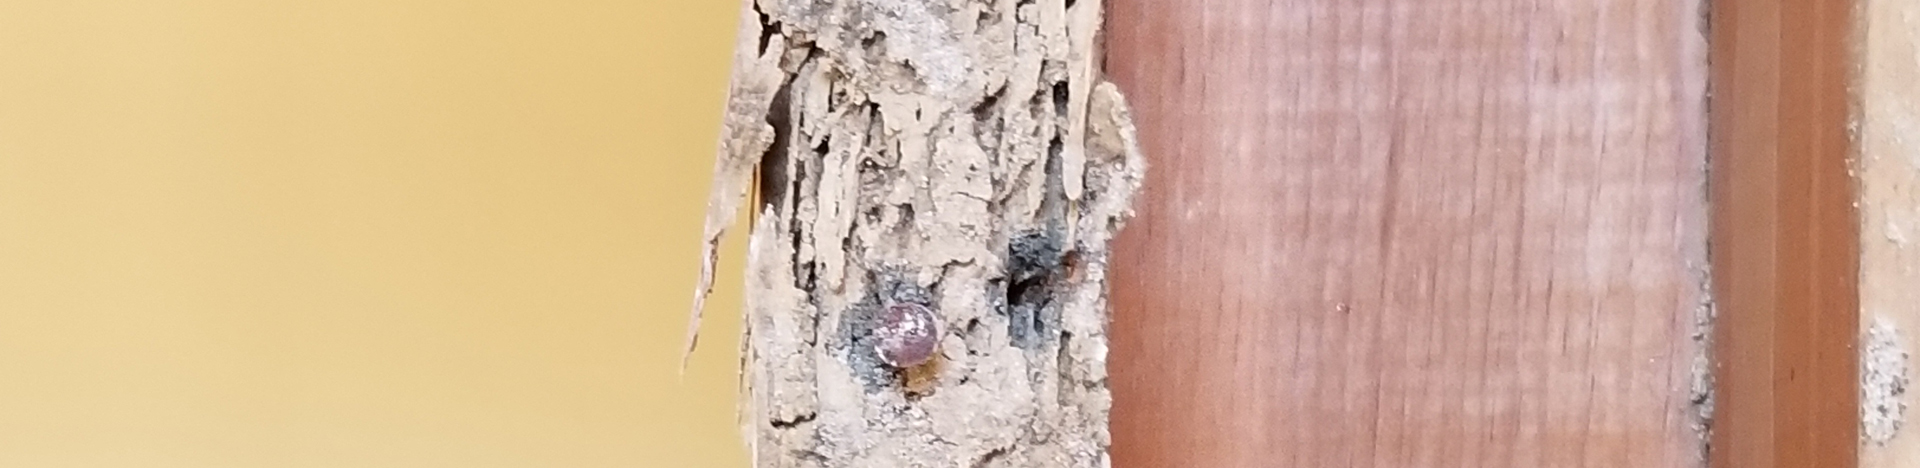 Phoenix Termite Experts